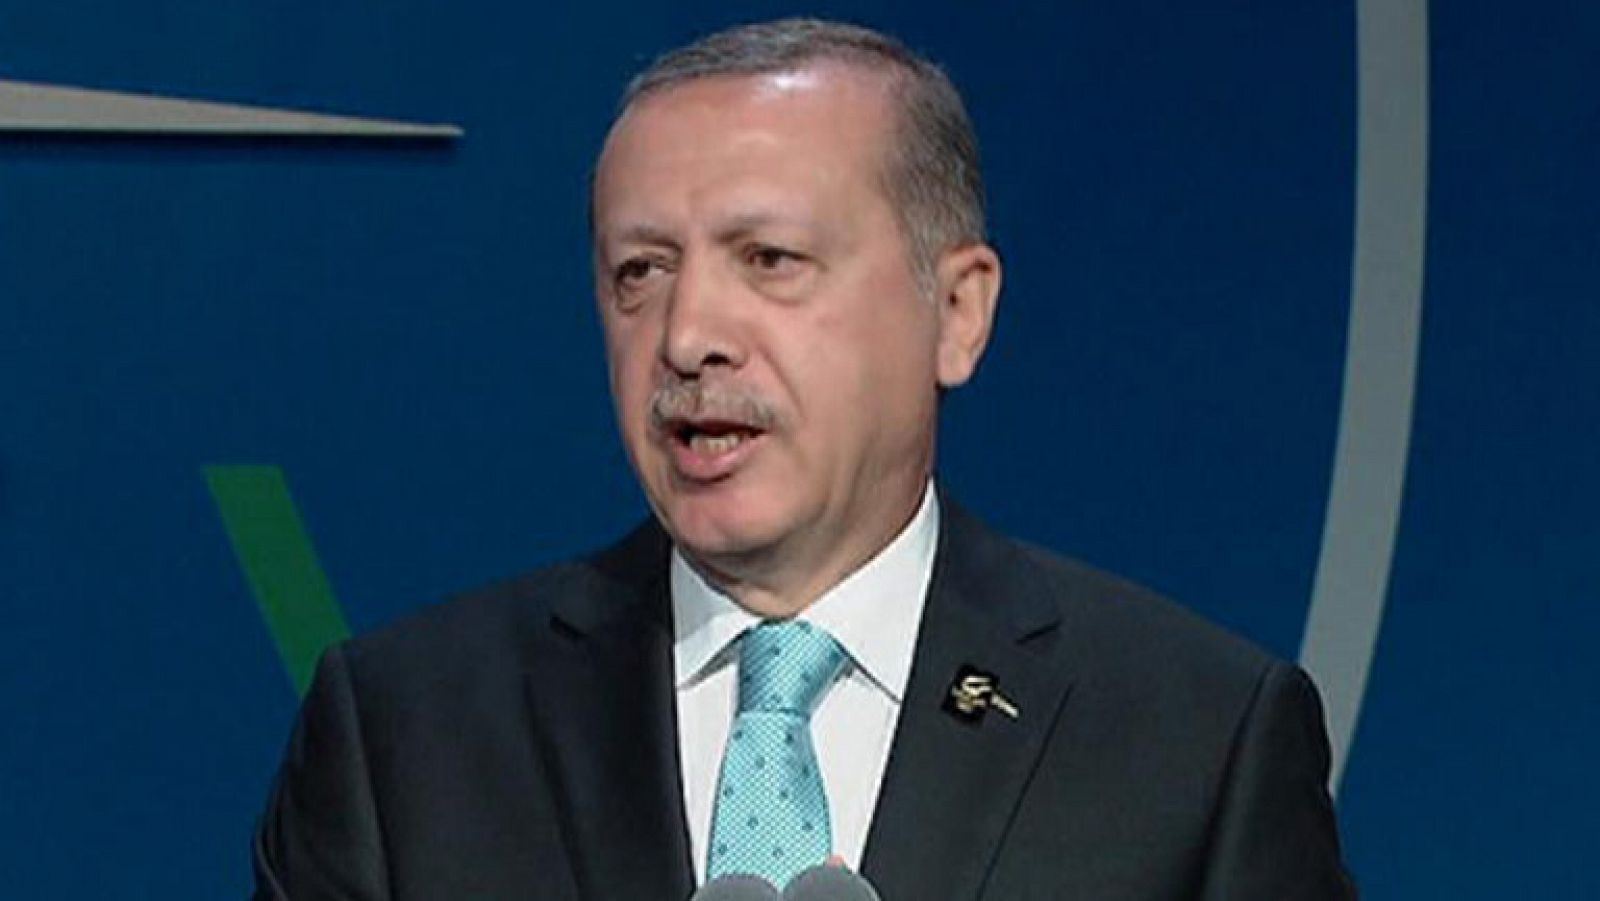 Especial Candidatura Olímpica 2020: Erdogan hace un llamamiento a "construir puentes" | RTVE Play